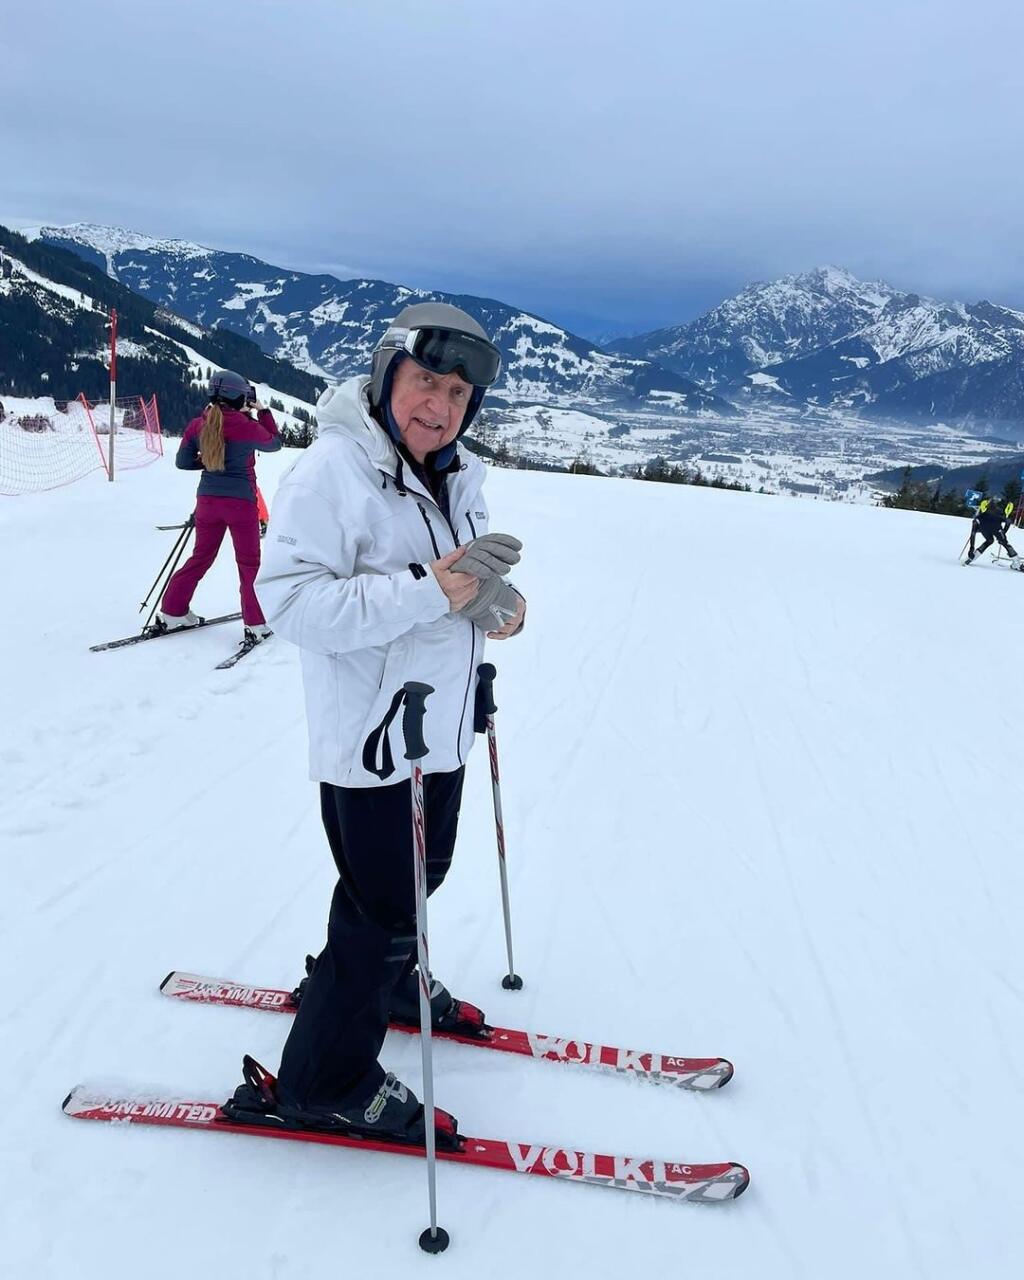 Felix Slováček on a recent ski trip.